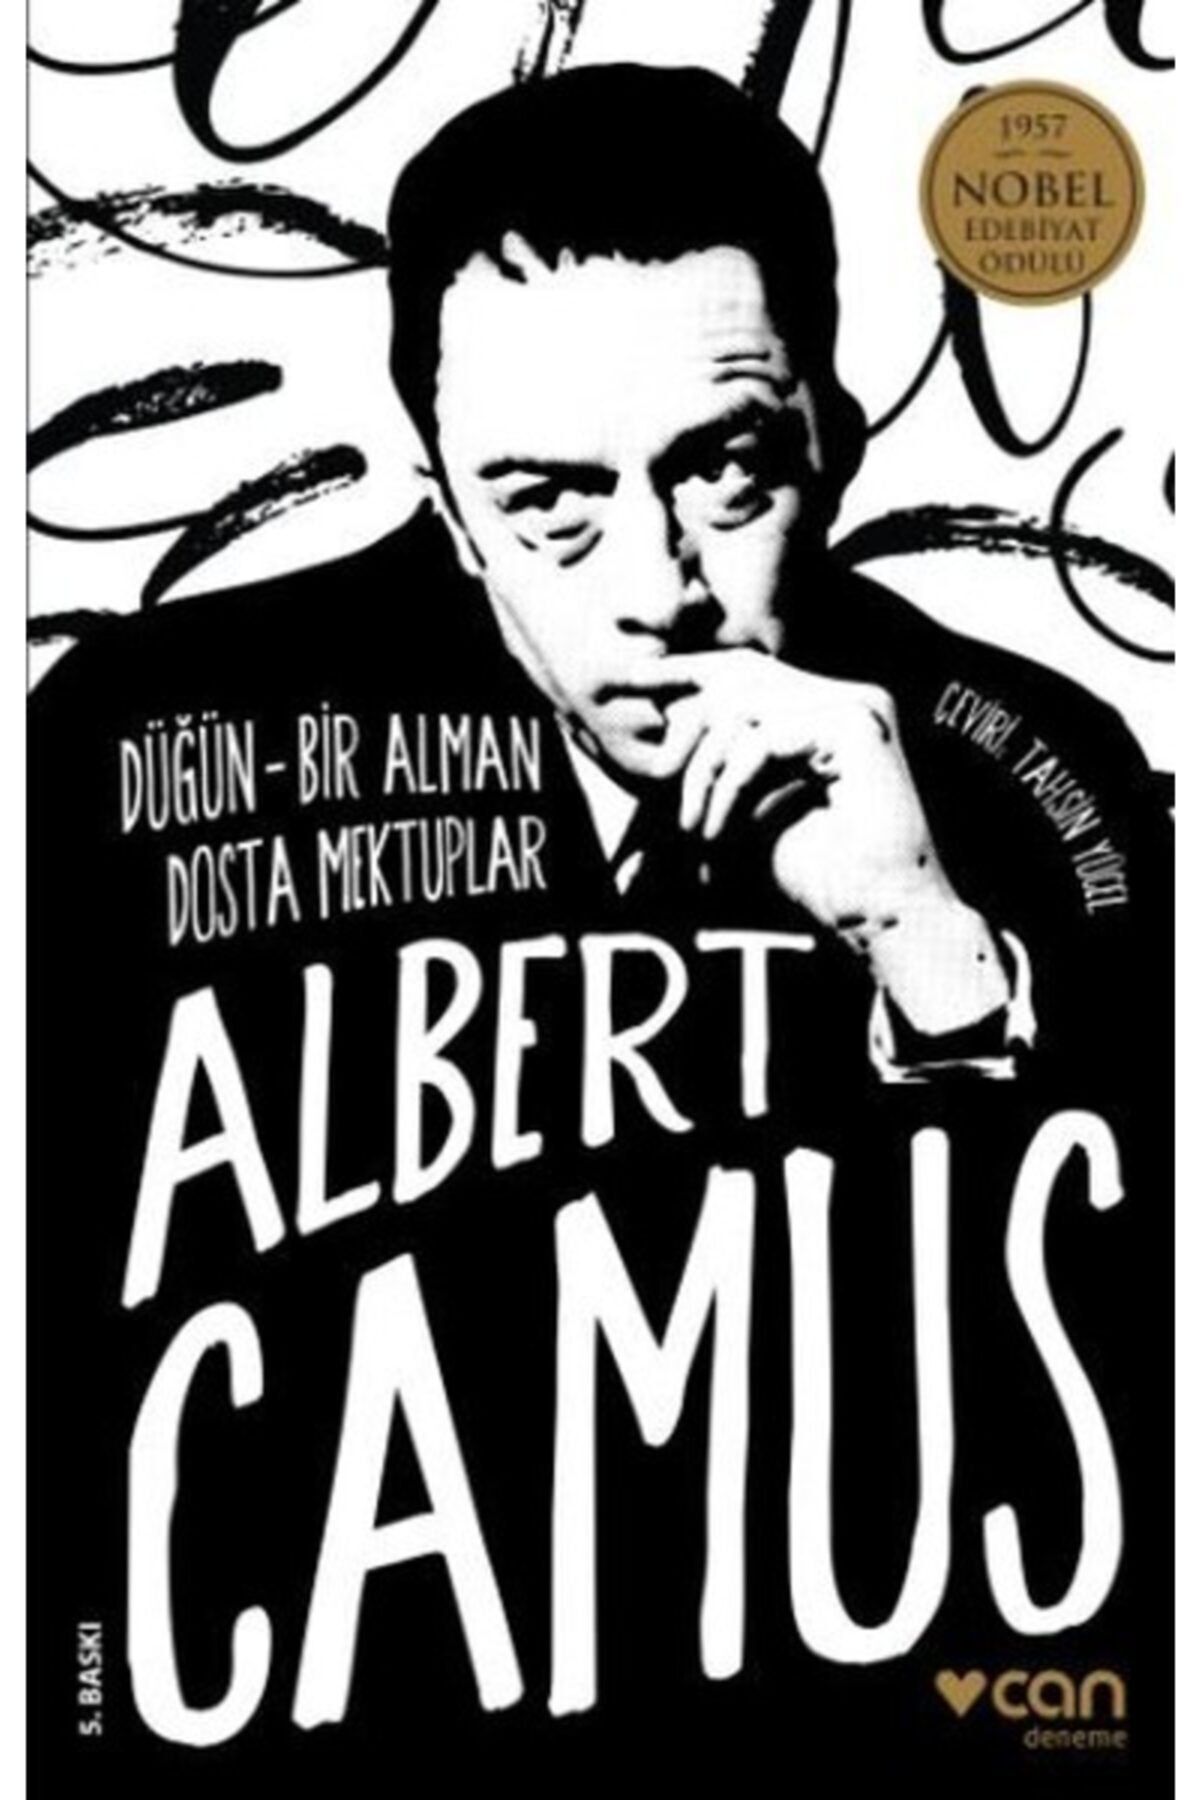 Güzem Can Yayınları Düğün Ve Bir Alman Dosta Mektuplar / Albert Camus - Can Yayınları